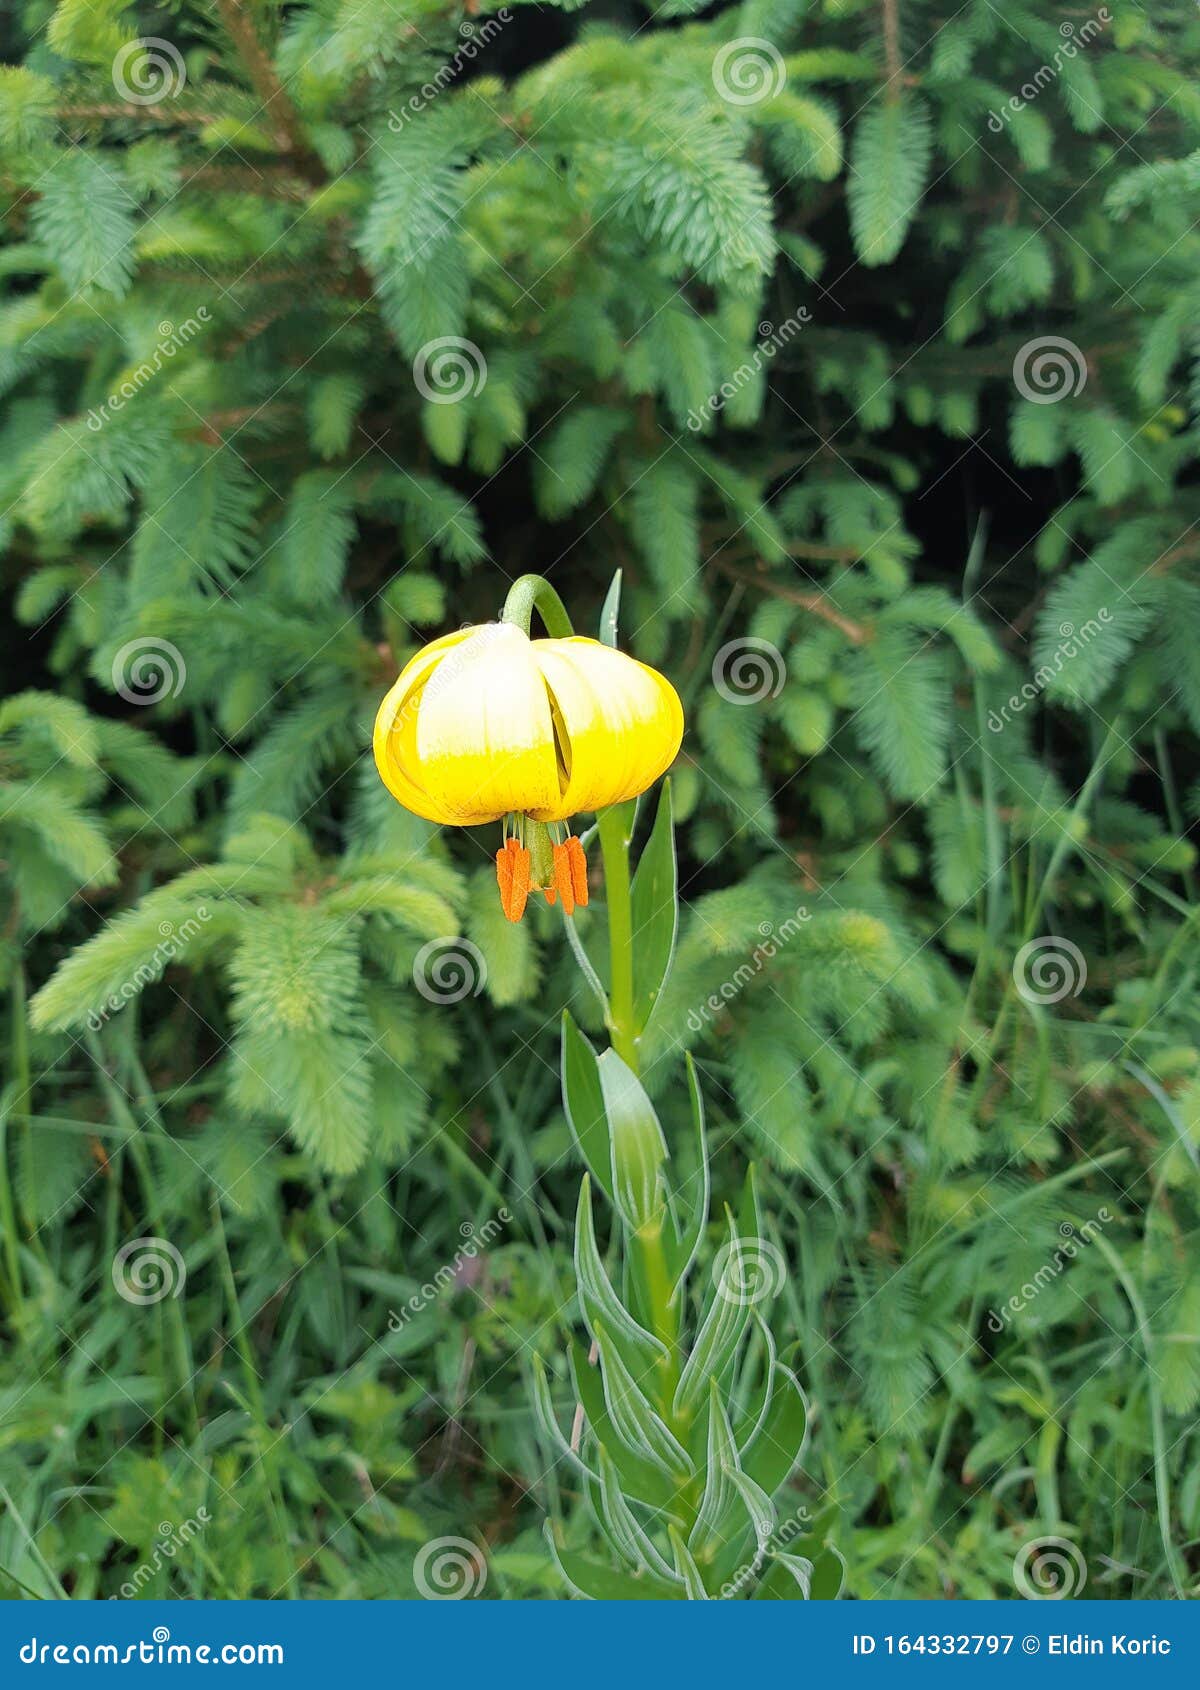 endemic flower, bosnian lilly